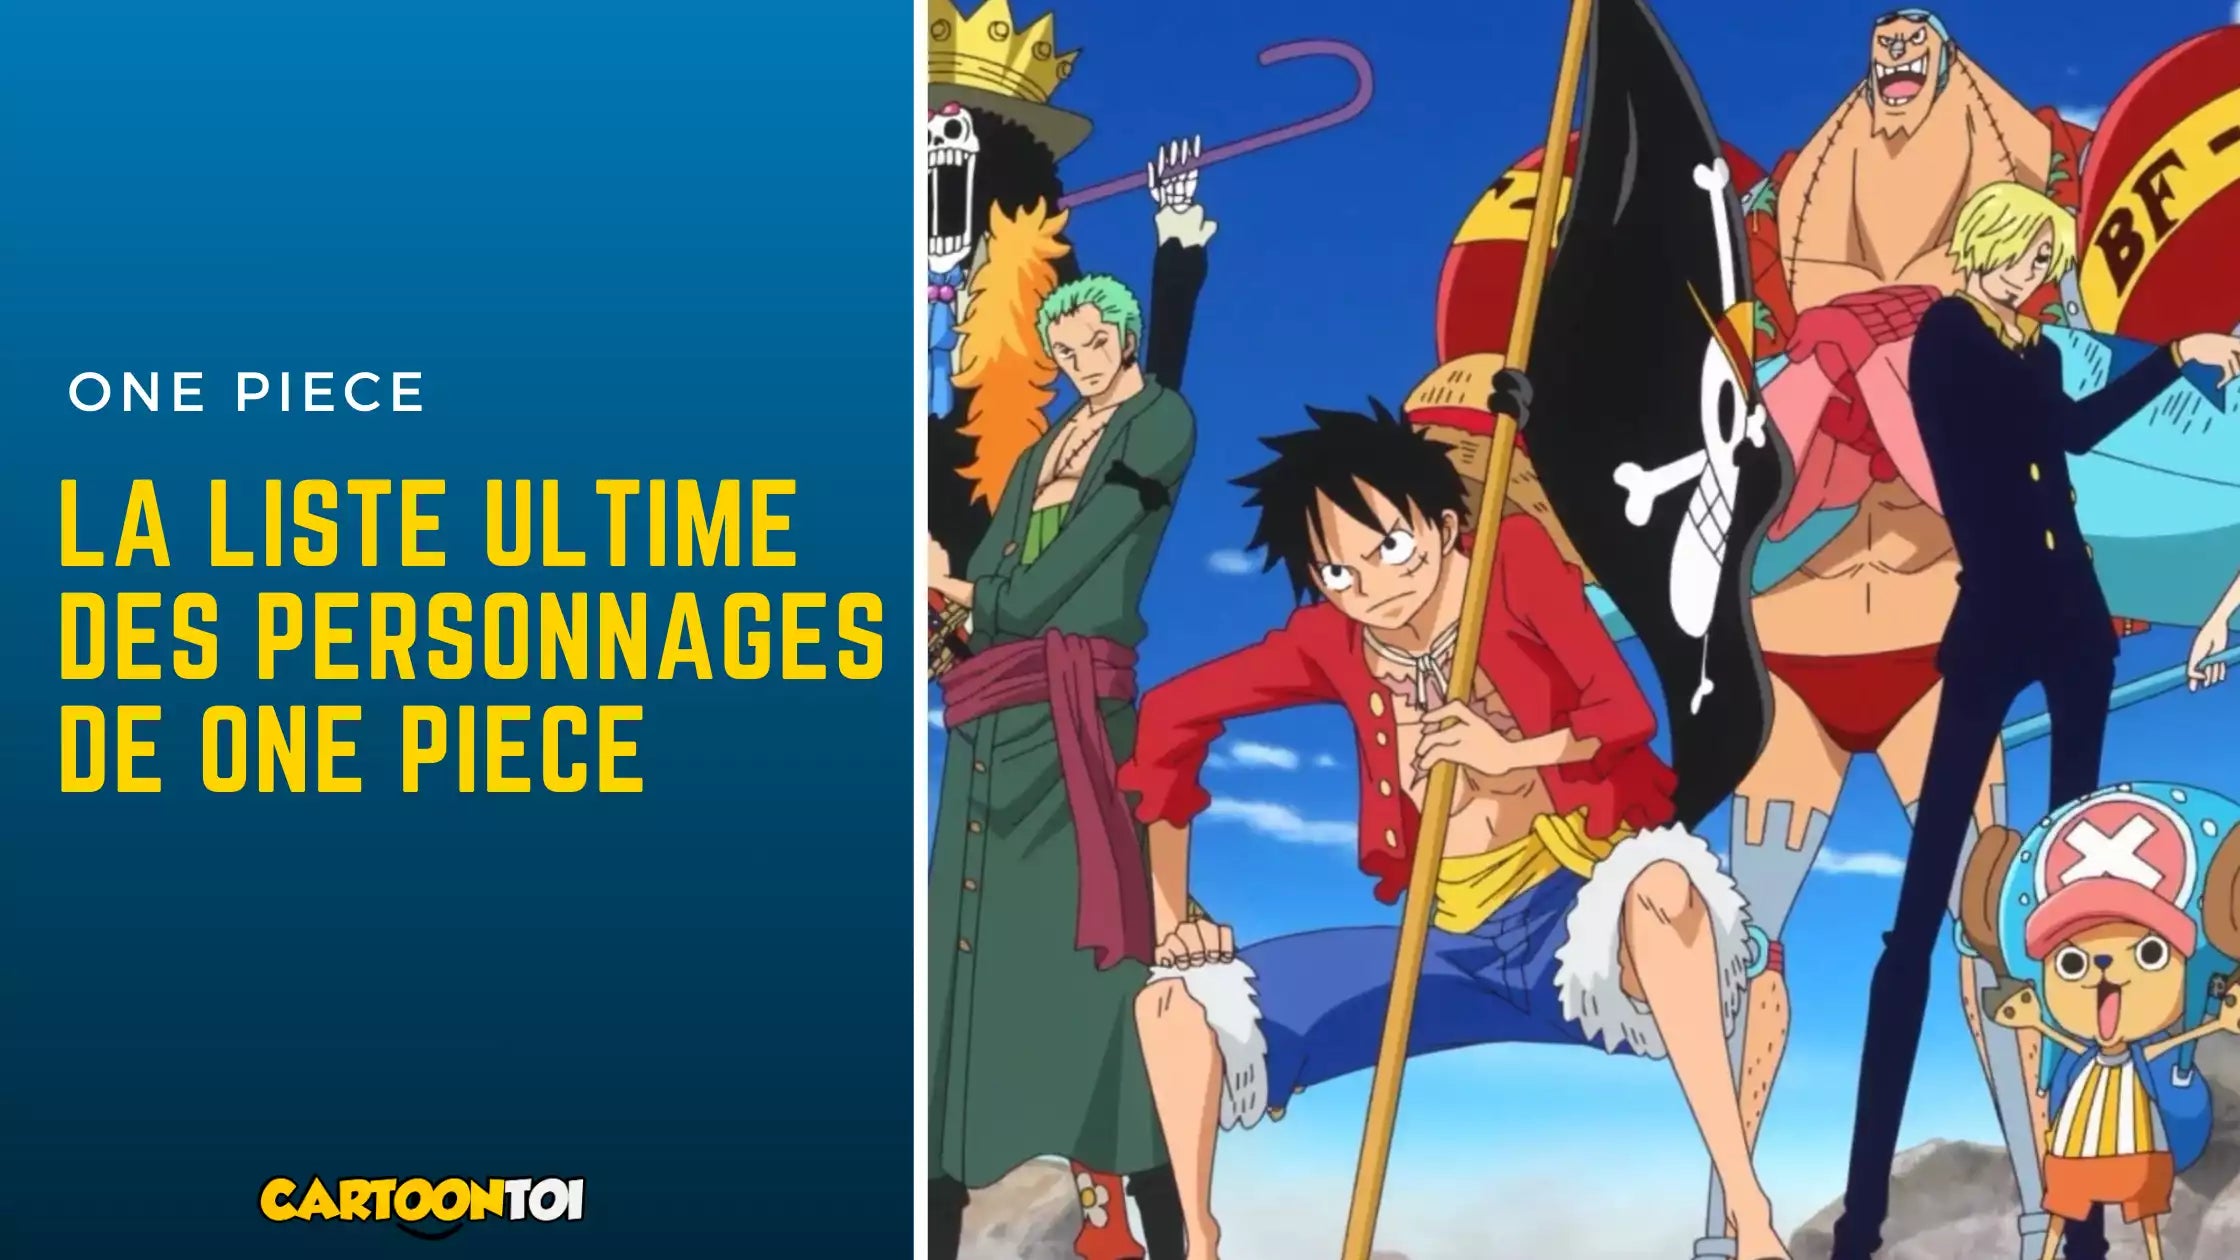 La liste des personnages One Piece